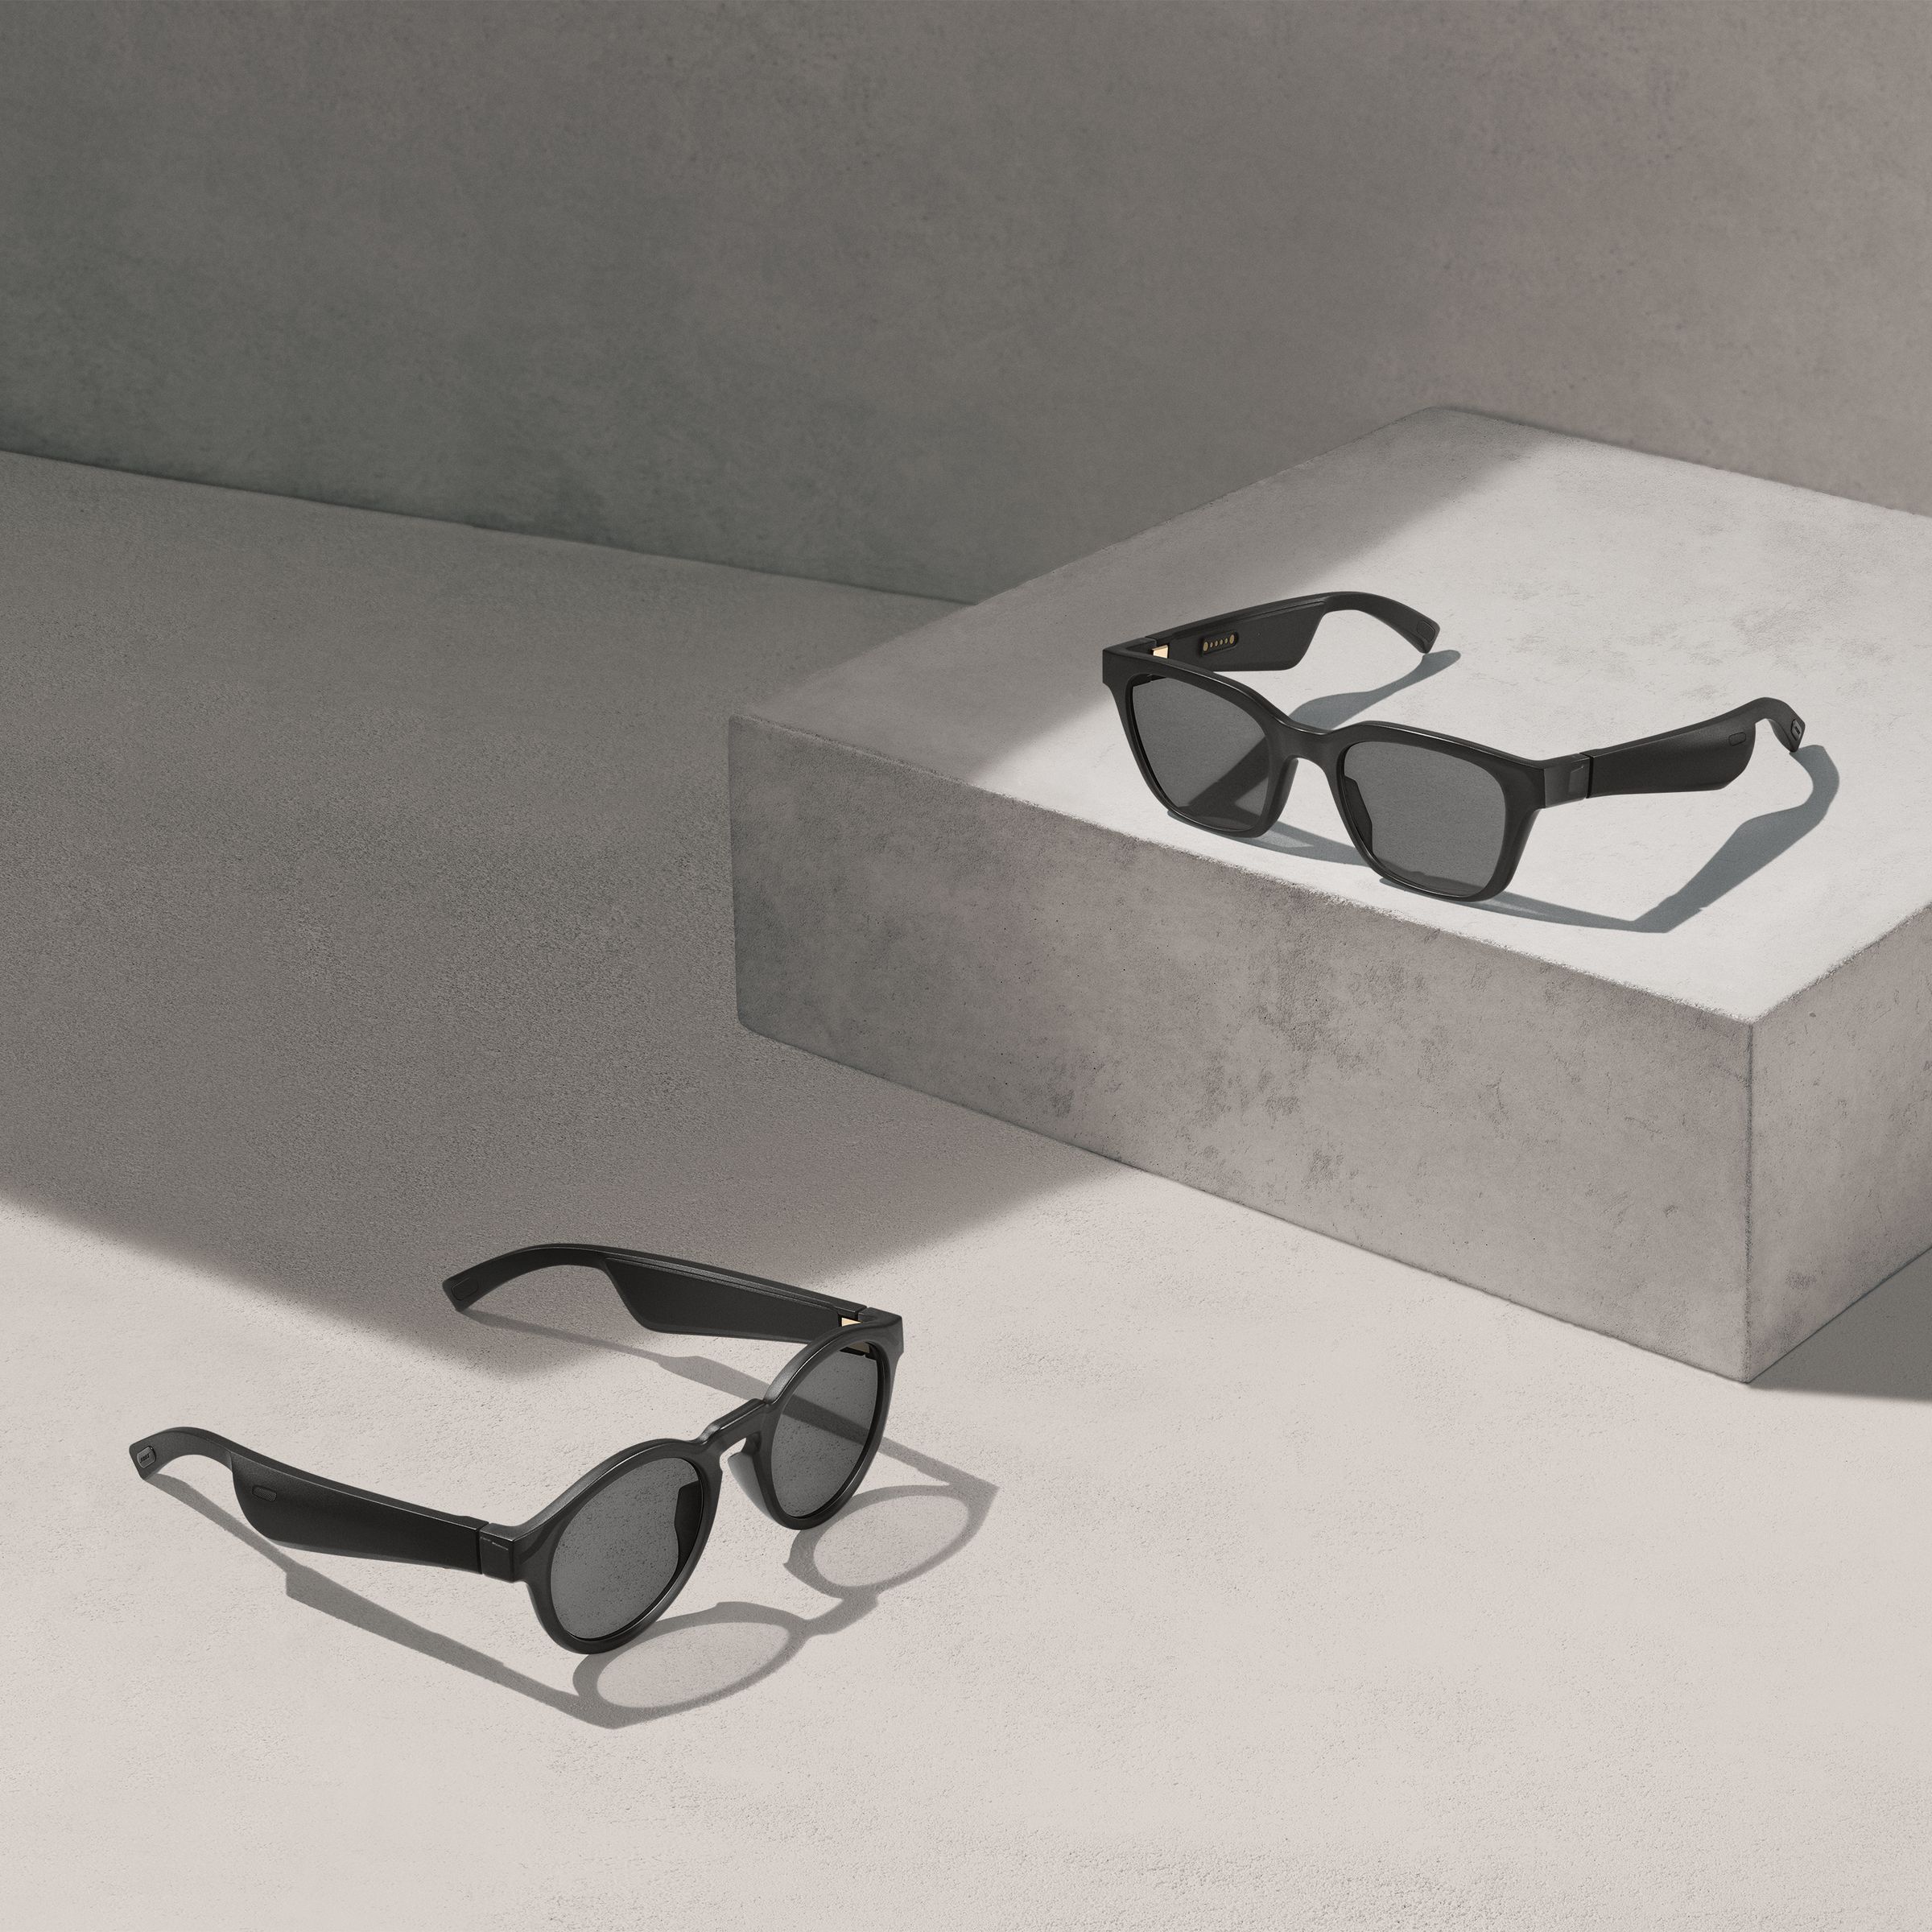 Bose’s Rondo (left) and Alto (right) sunglasses.